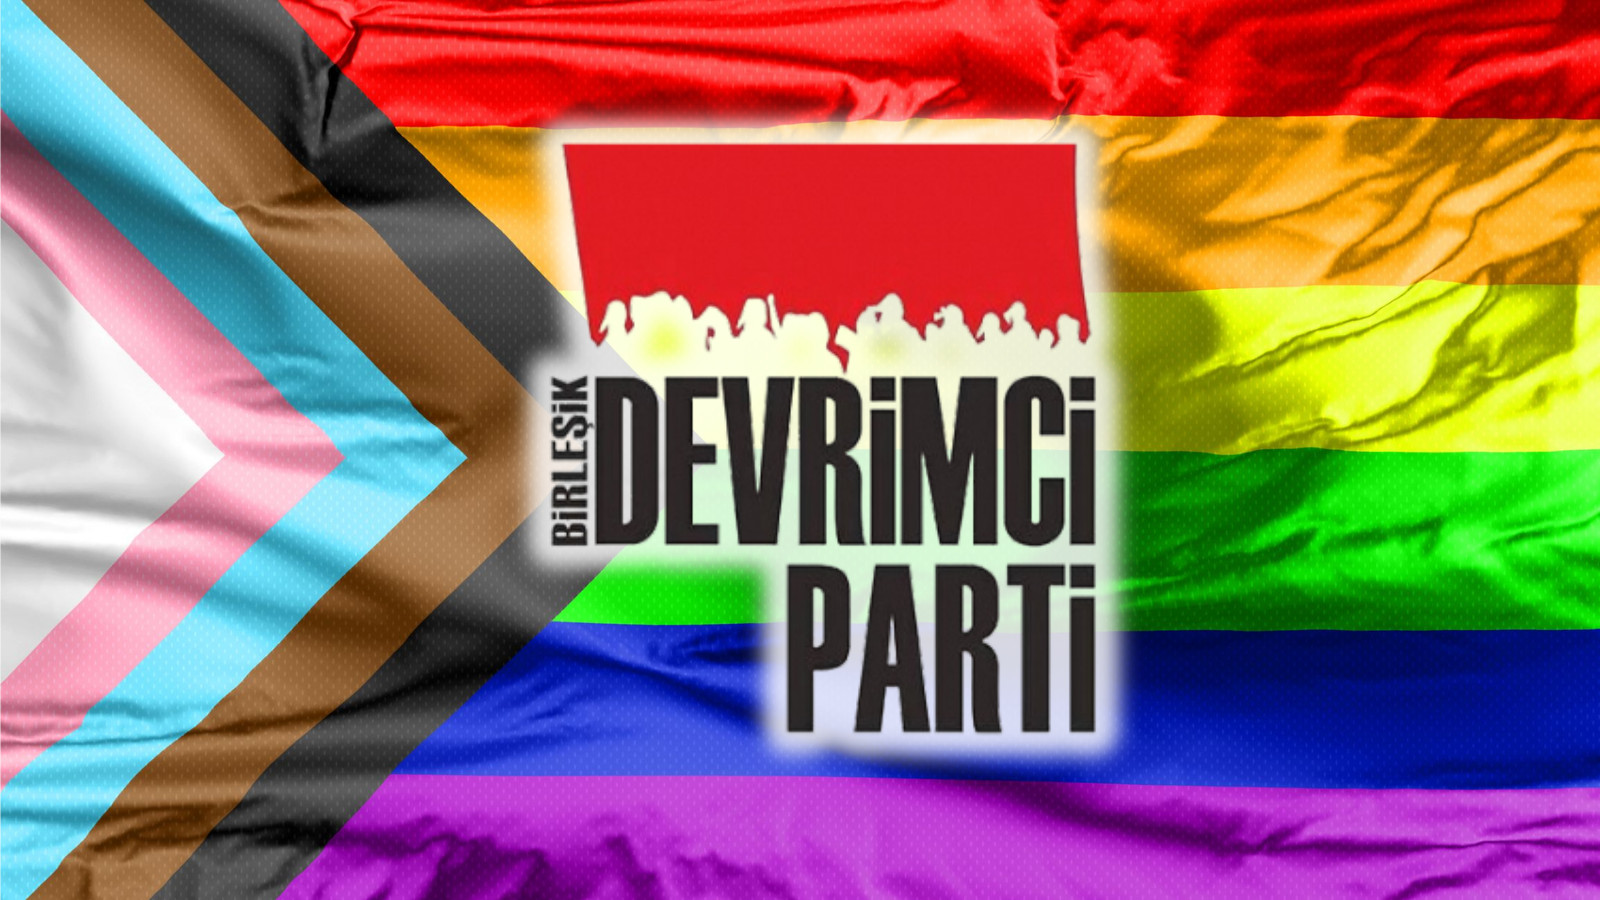 Devrimci Parti: Hetero-patriyarkanın karşısında, LGBTİ+’ların yanındayız | Kaos GL - LGBTİ+ Haber Portalı Haber